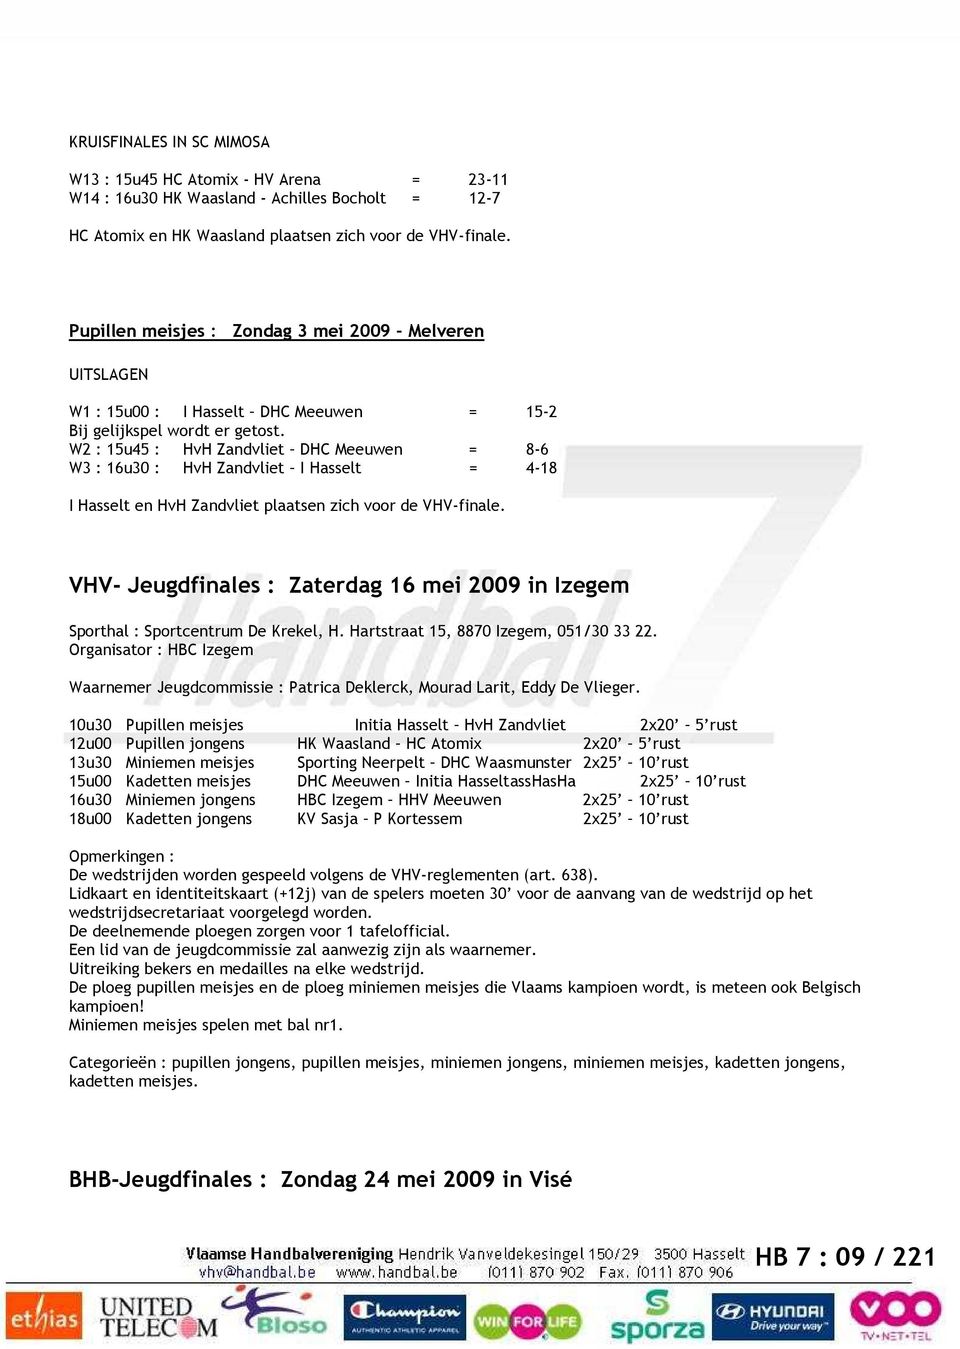 W2 : 15u45 : HvH Zandvliet DHC Meeuwen = 8-6 W3 : 16u30 : HvH Zandvliet I Hasselt = 4-18 I Hasselt en HvH Zandvliet plaatsen zich voor de VHV-finale.